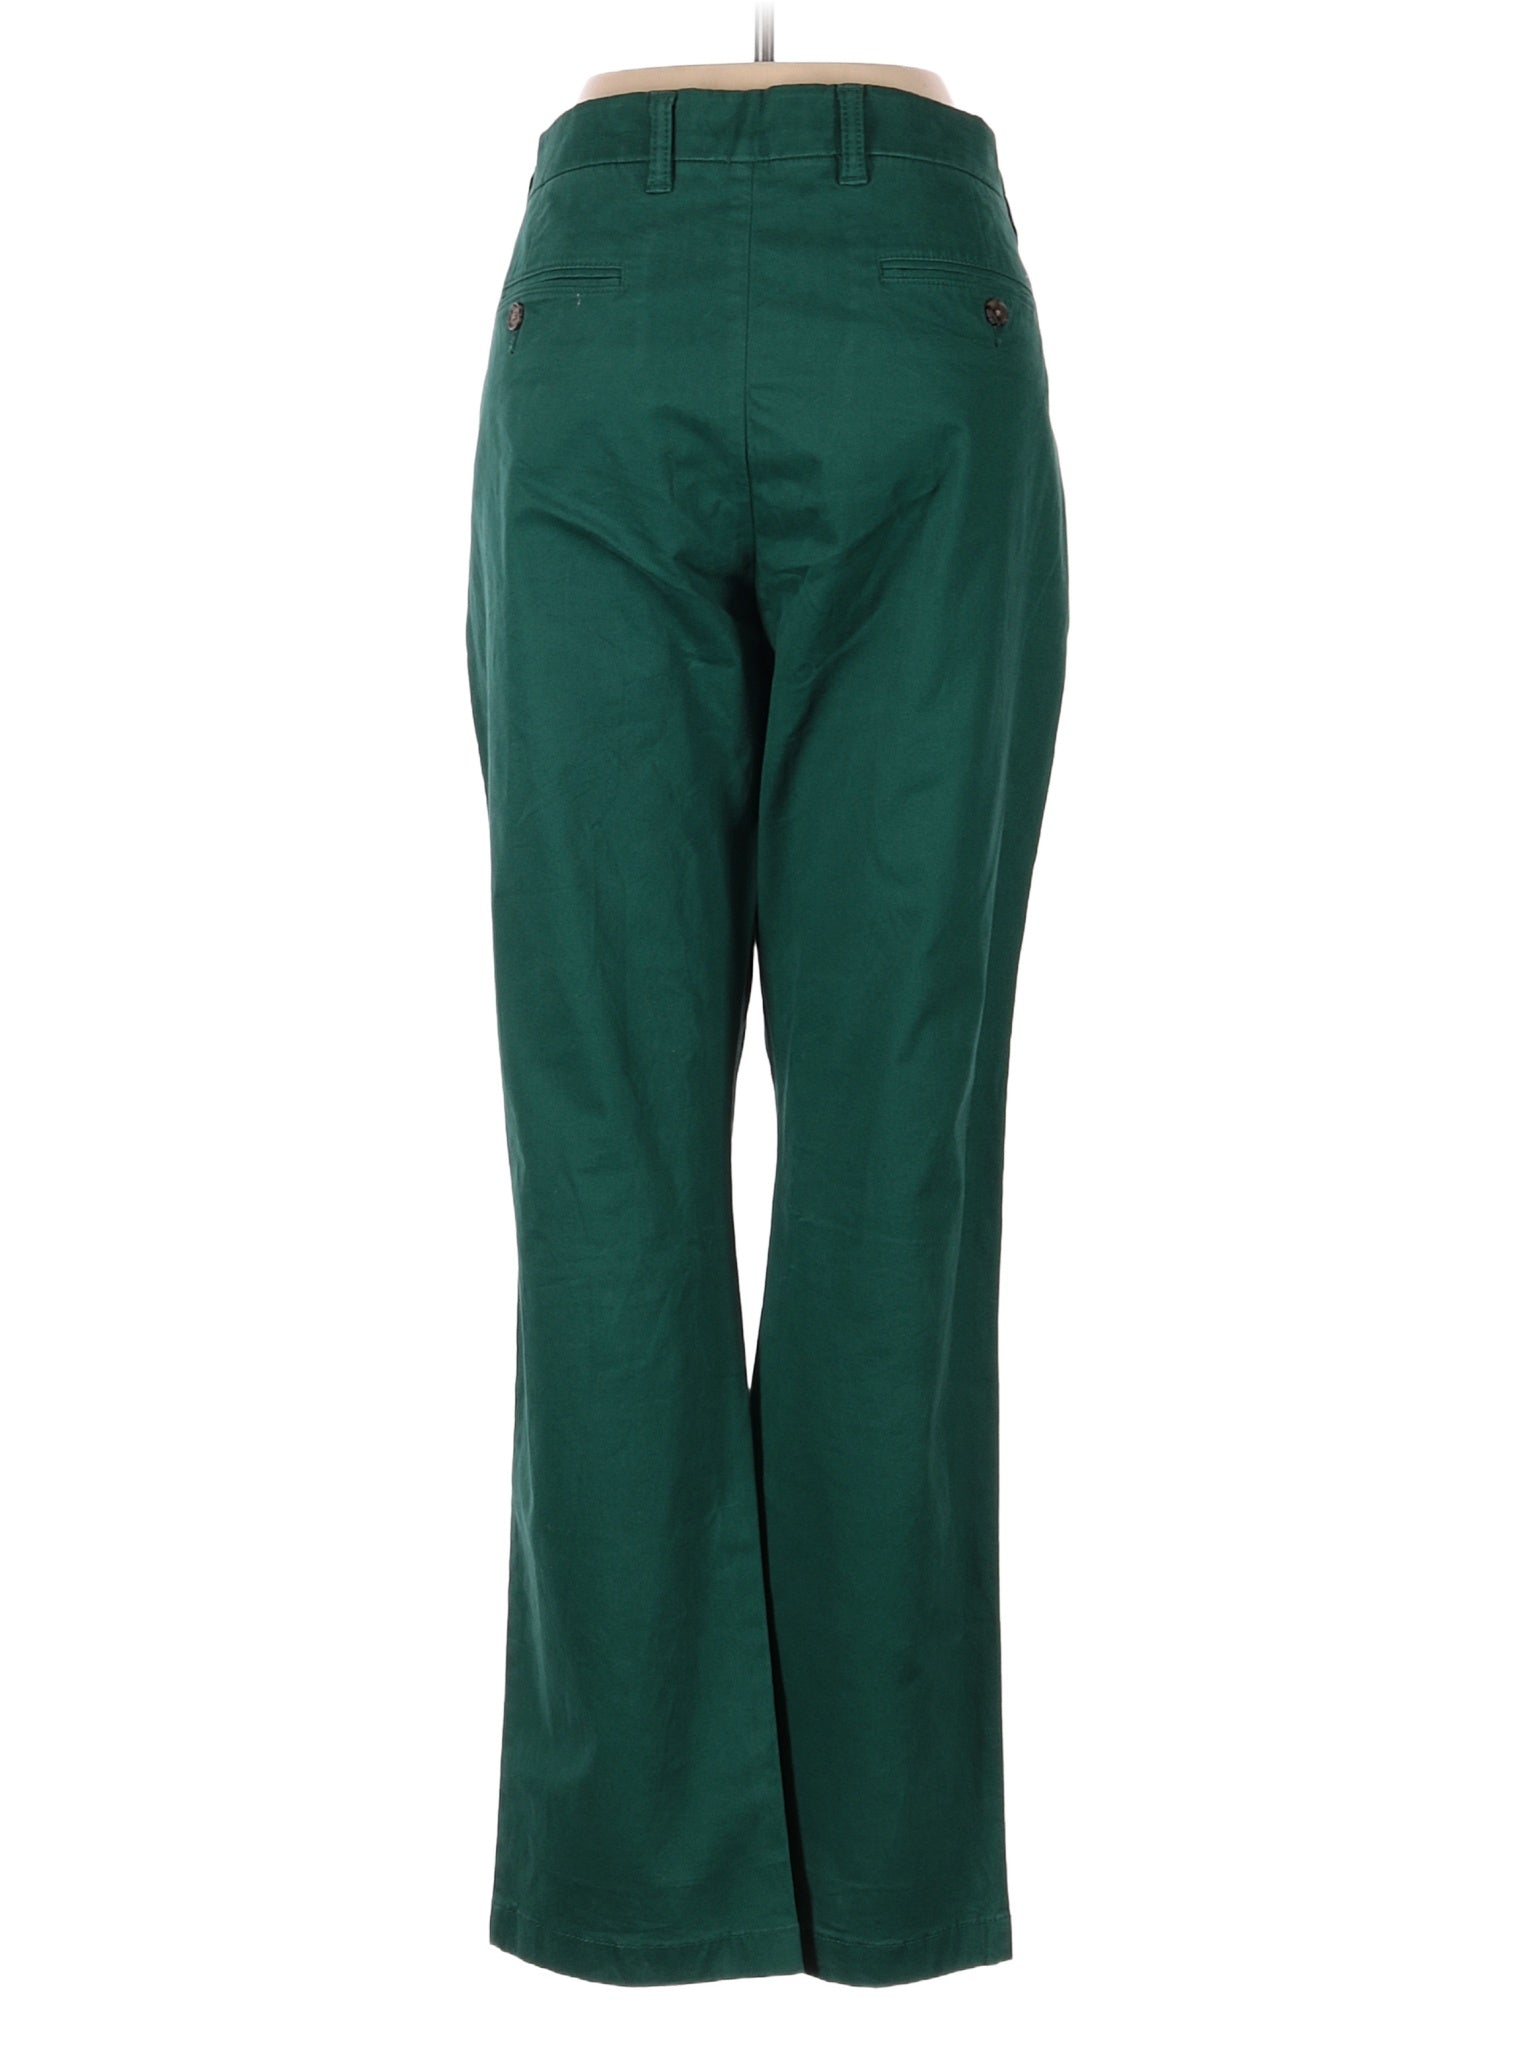 Khaki/Chino Pants size - 33 (W33 L30)